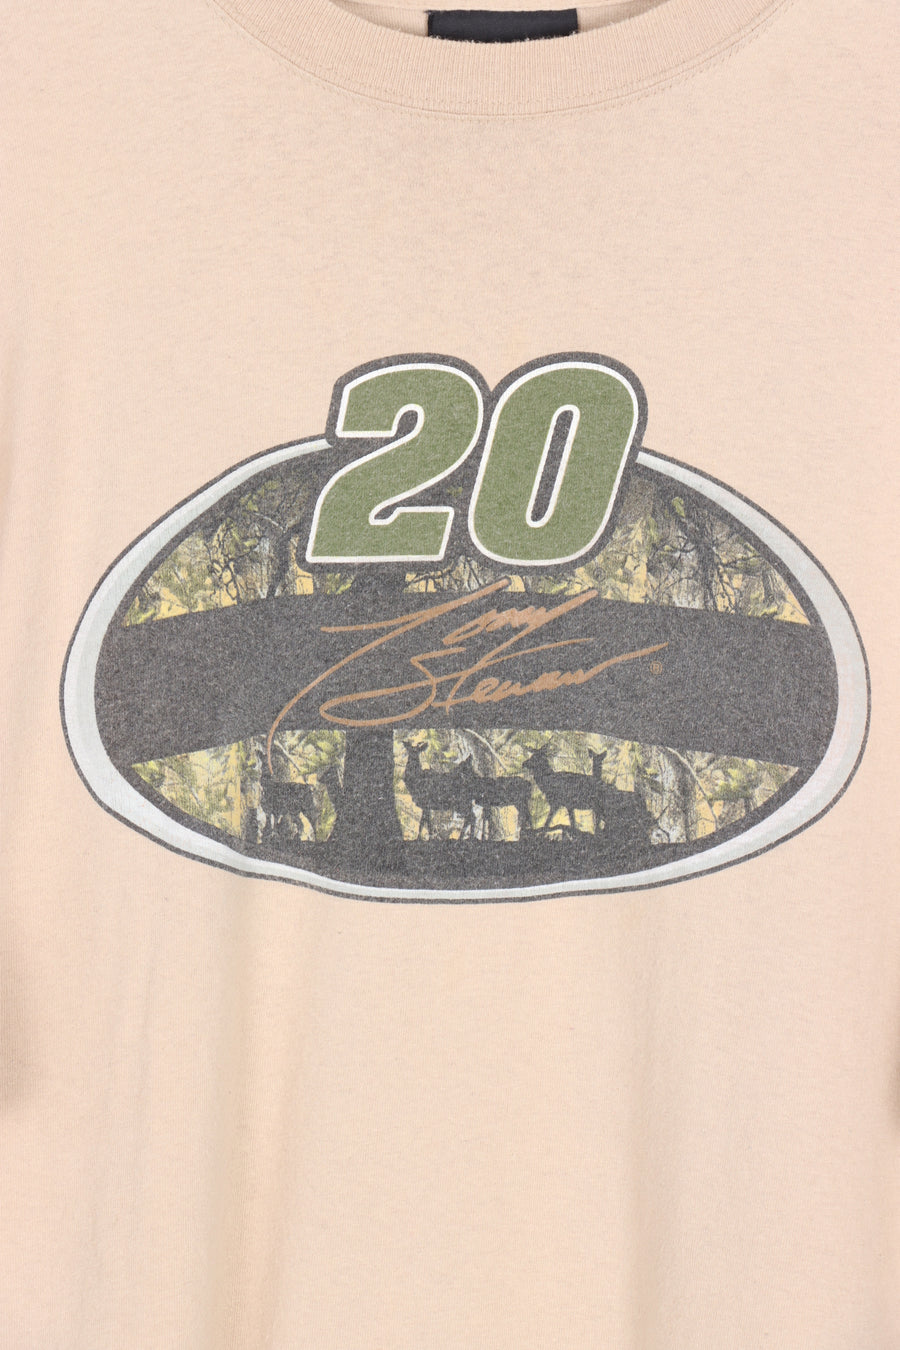 NASCAR Tony Stewart #20 Racing Beige Tee (XXL)